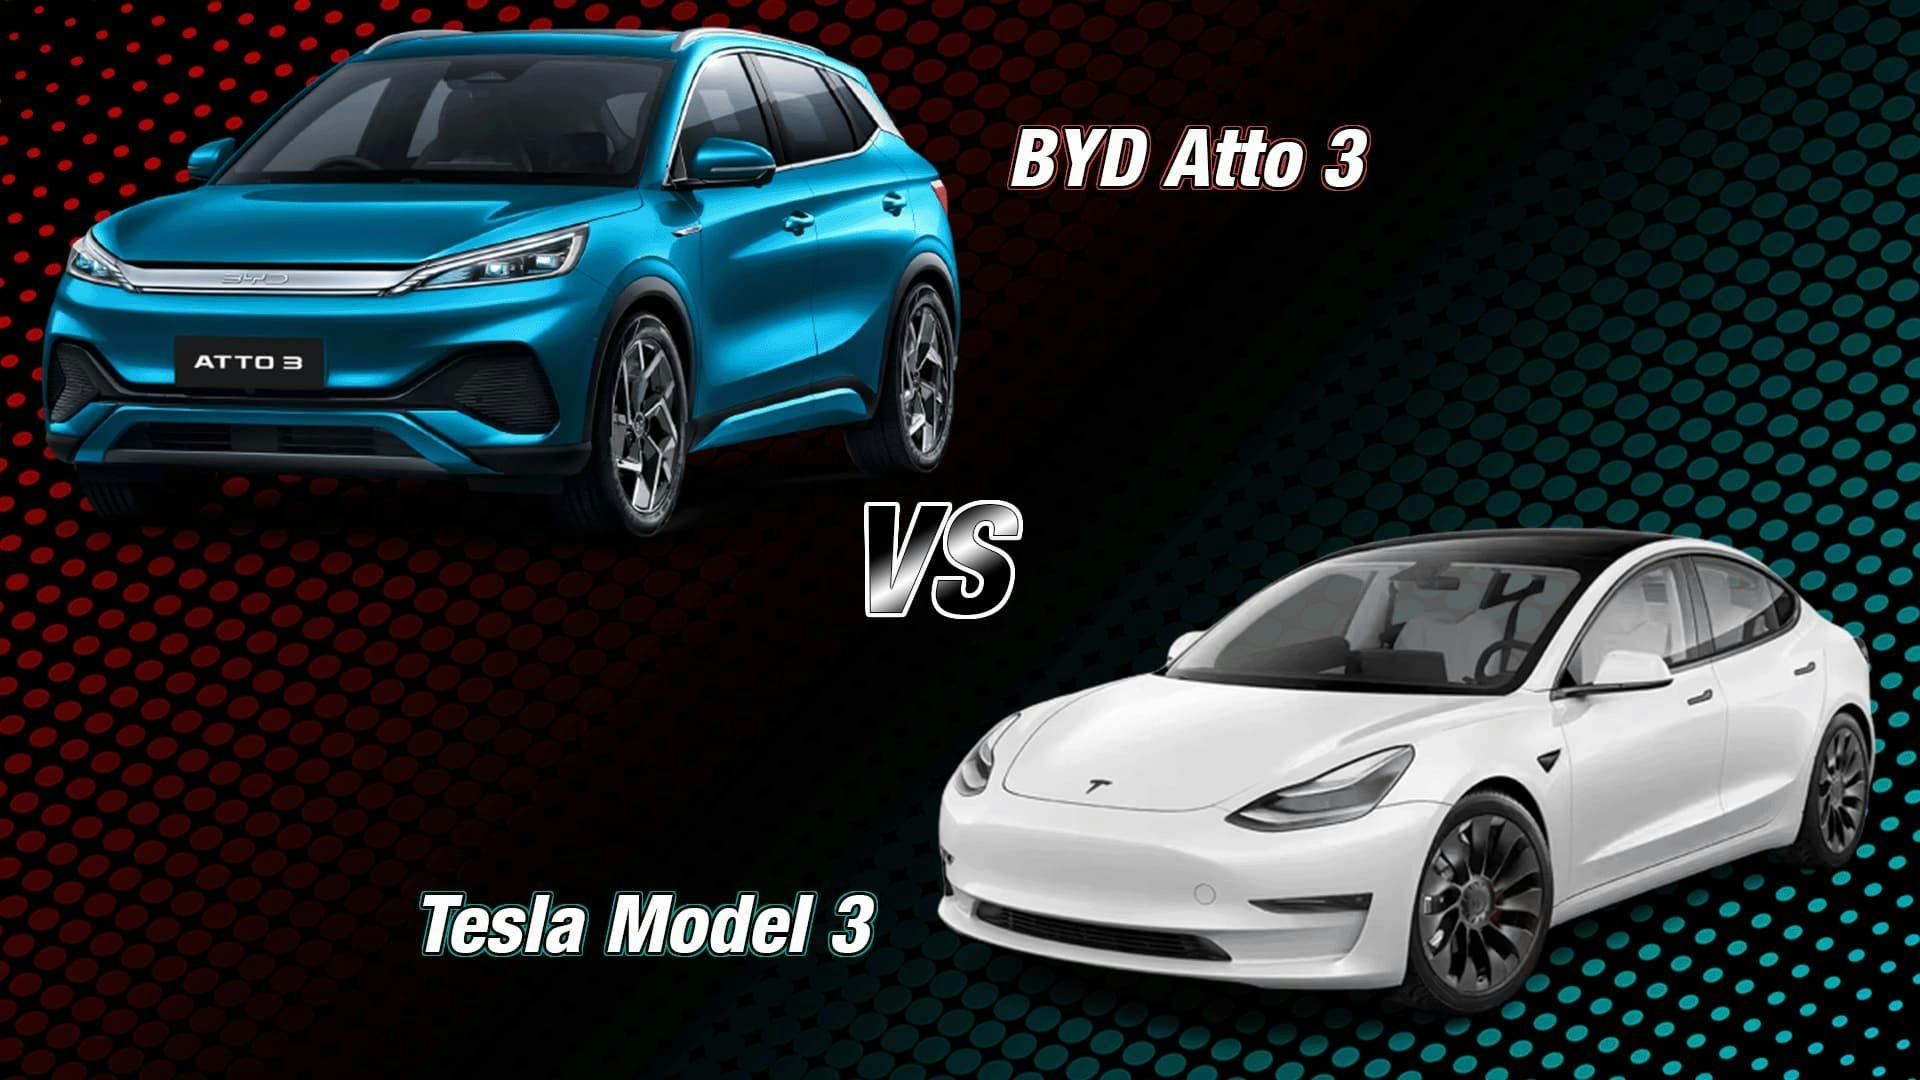 BYD Atto 3 vs Tesla Model 3